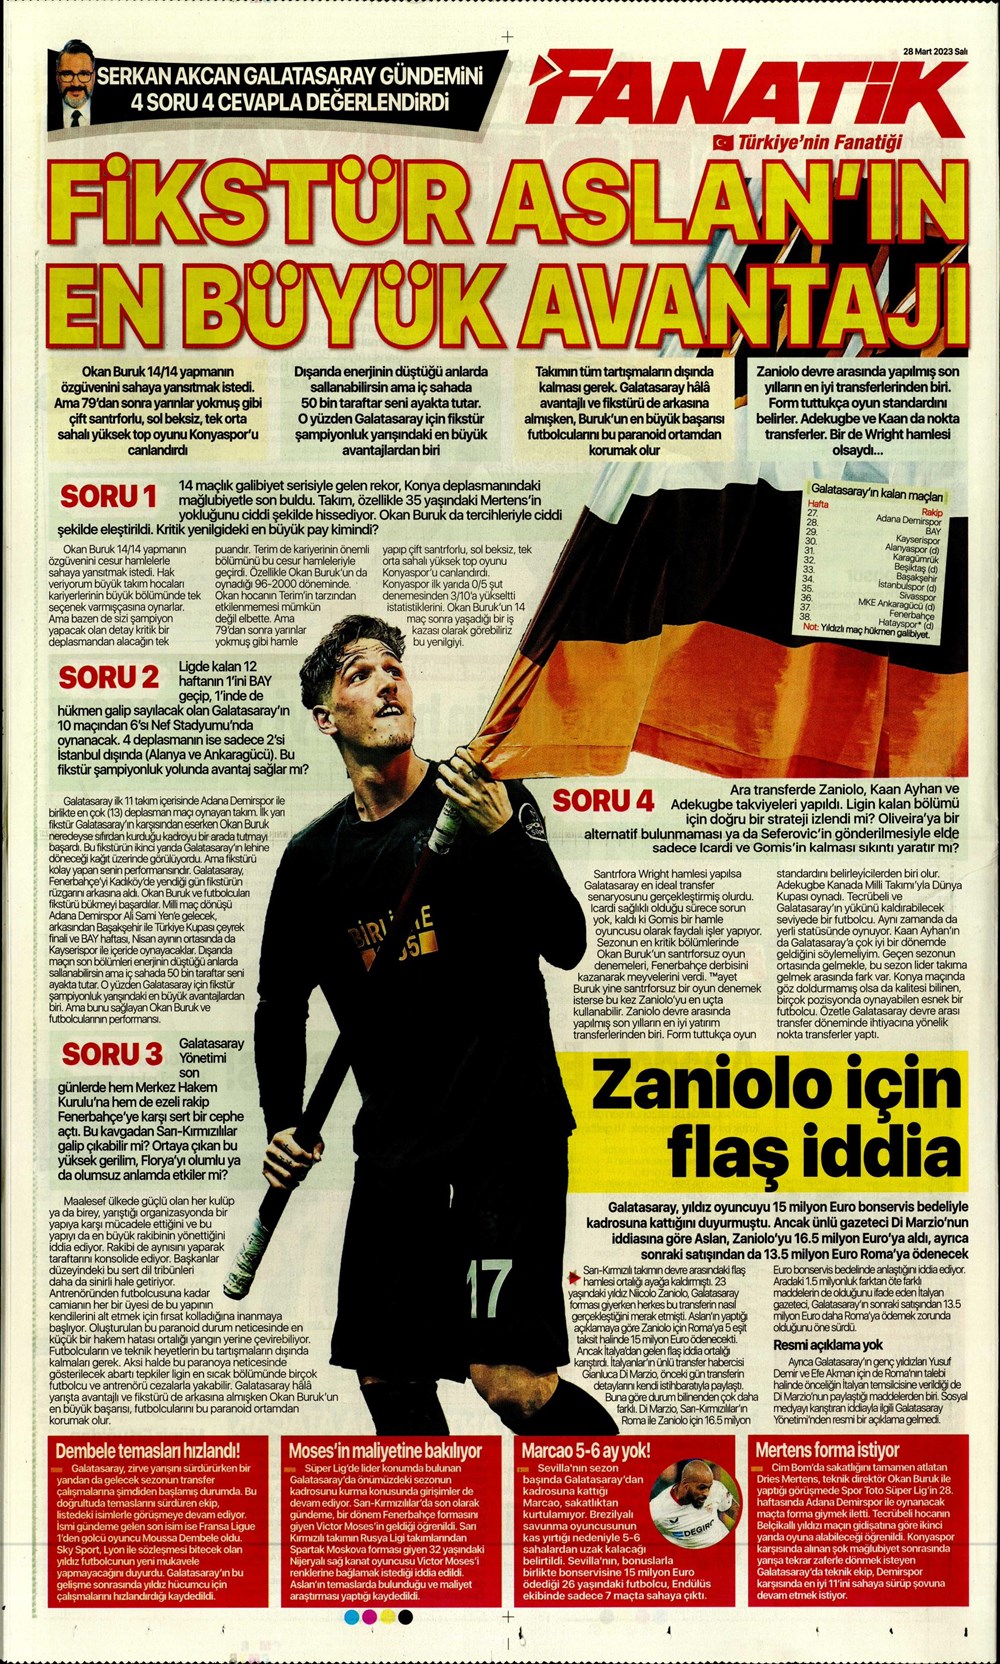 "Vurduğumuz gol olsun" - Sporun manşetleri - 10. Foto